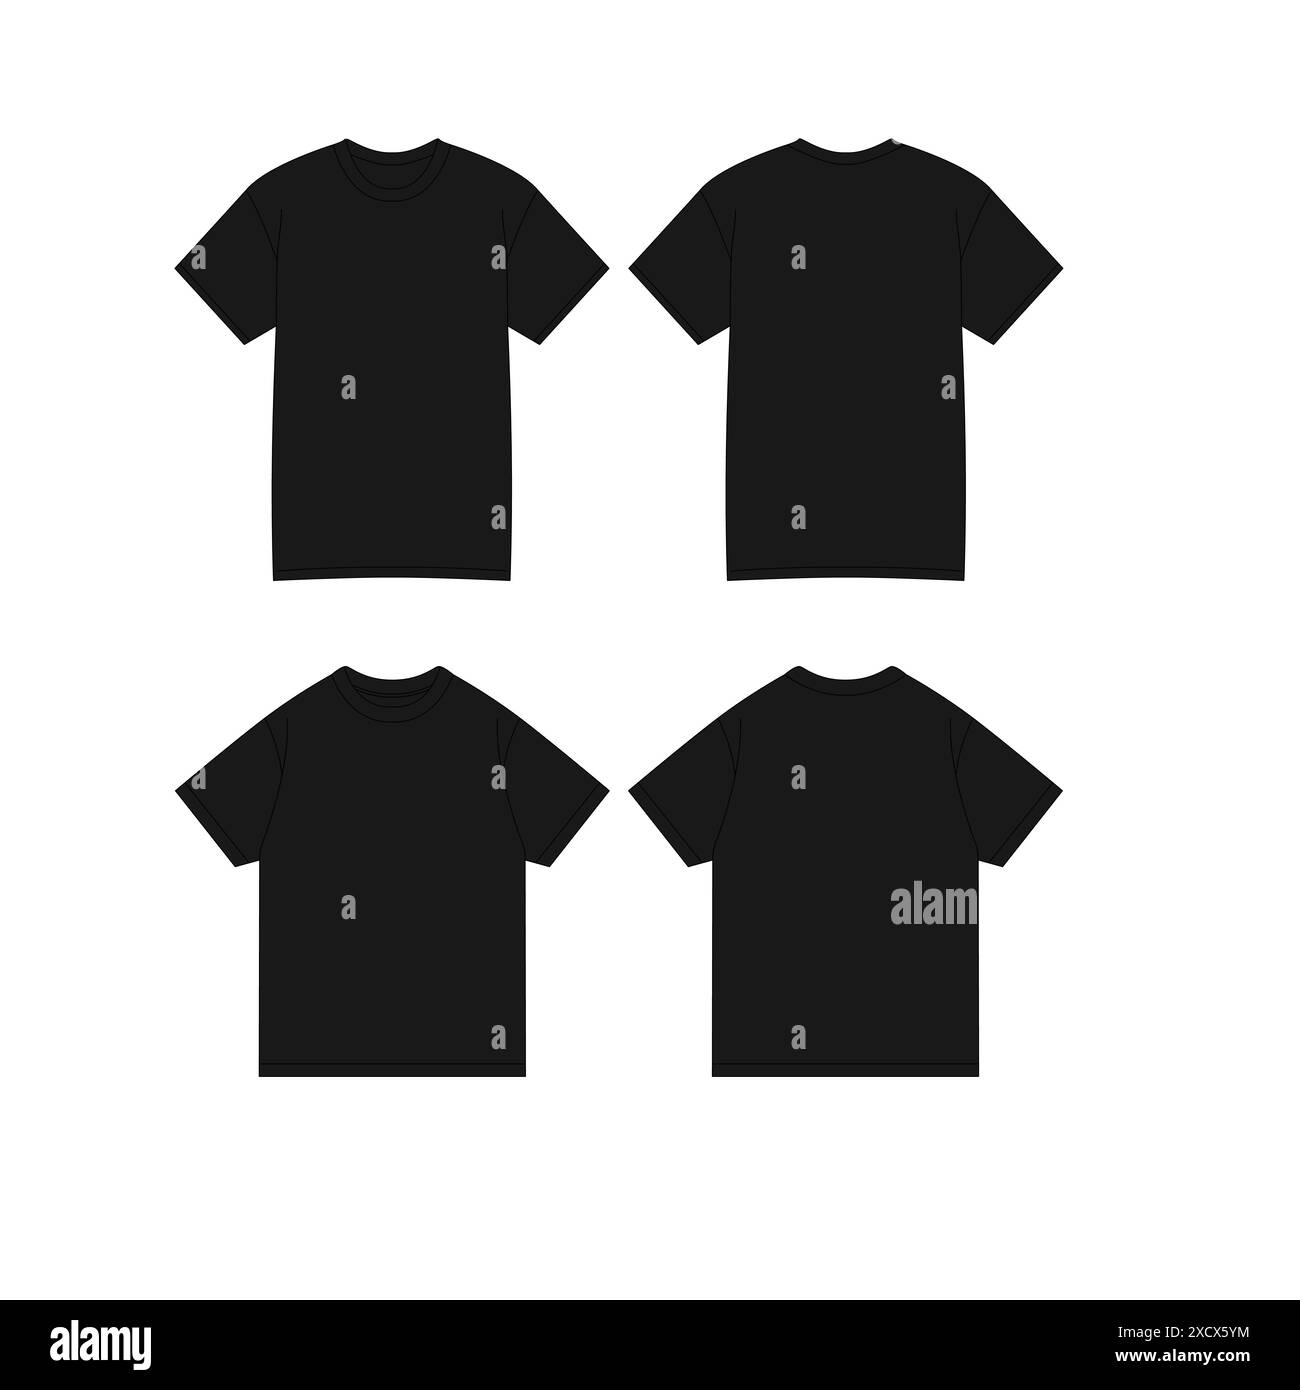 T-shirt nera maschio Set di mockup realistico Vista anteriore posteriore modello di design con stampa in tessuto vuoto abbigliamento moda magliette disegno CAD Vector Tee nera maschio Illustrazione Vettoriale